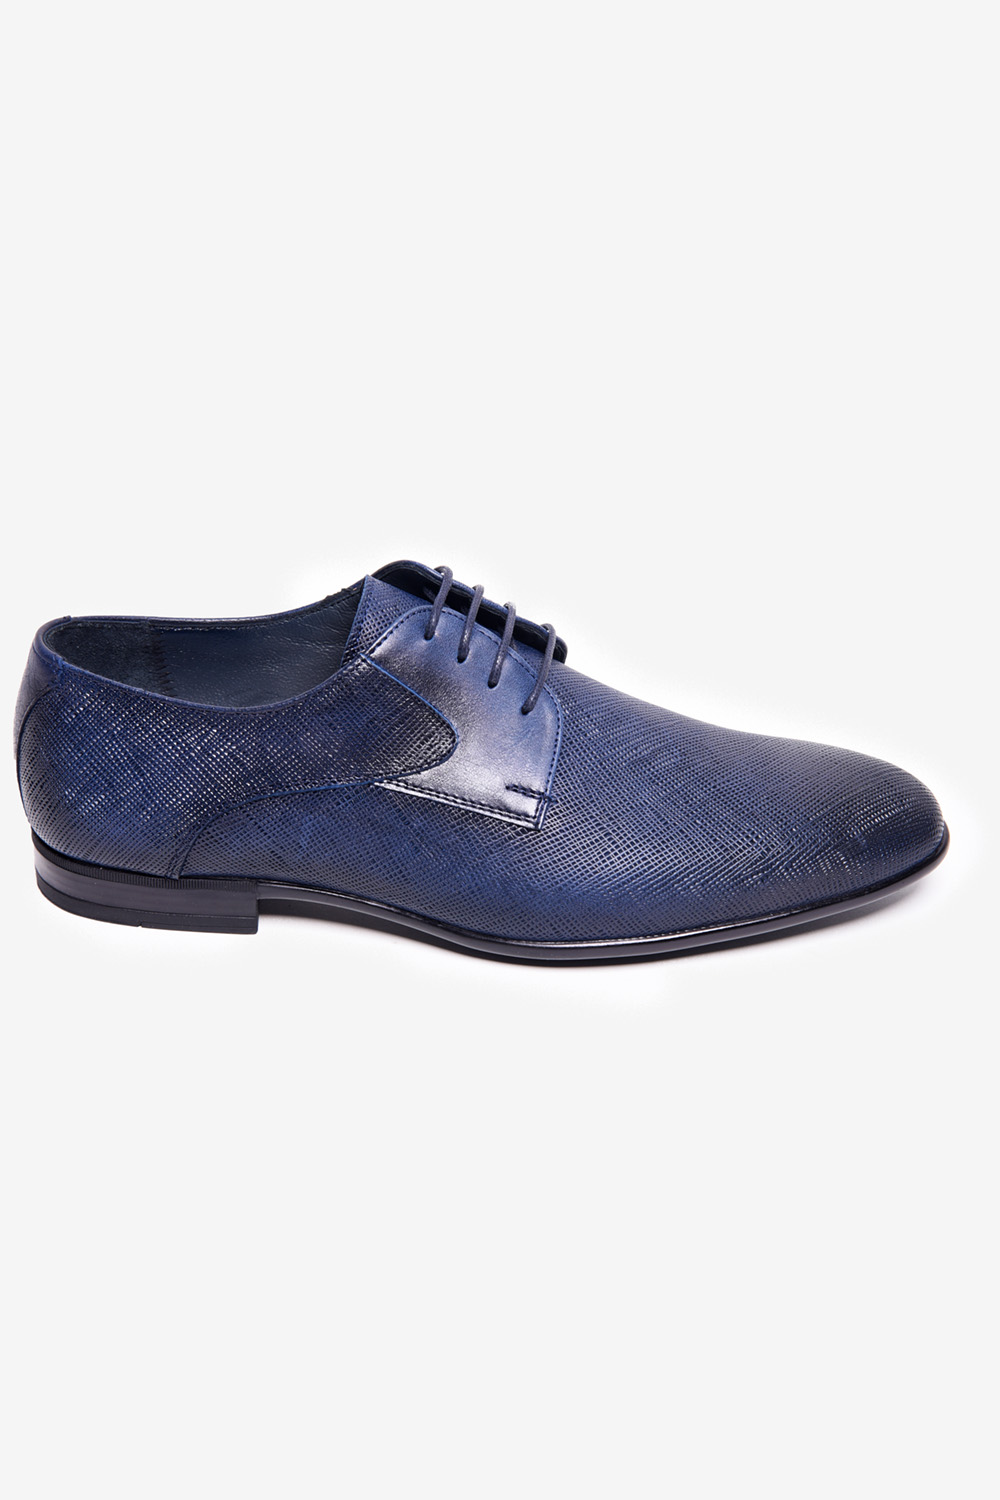 Manzetti kék bőr cipő részletek 3118-30